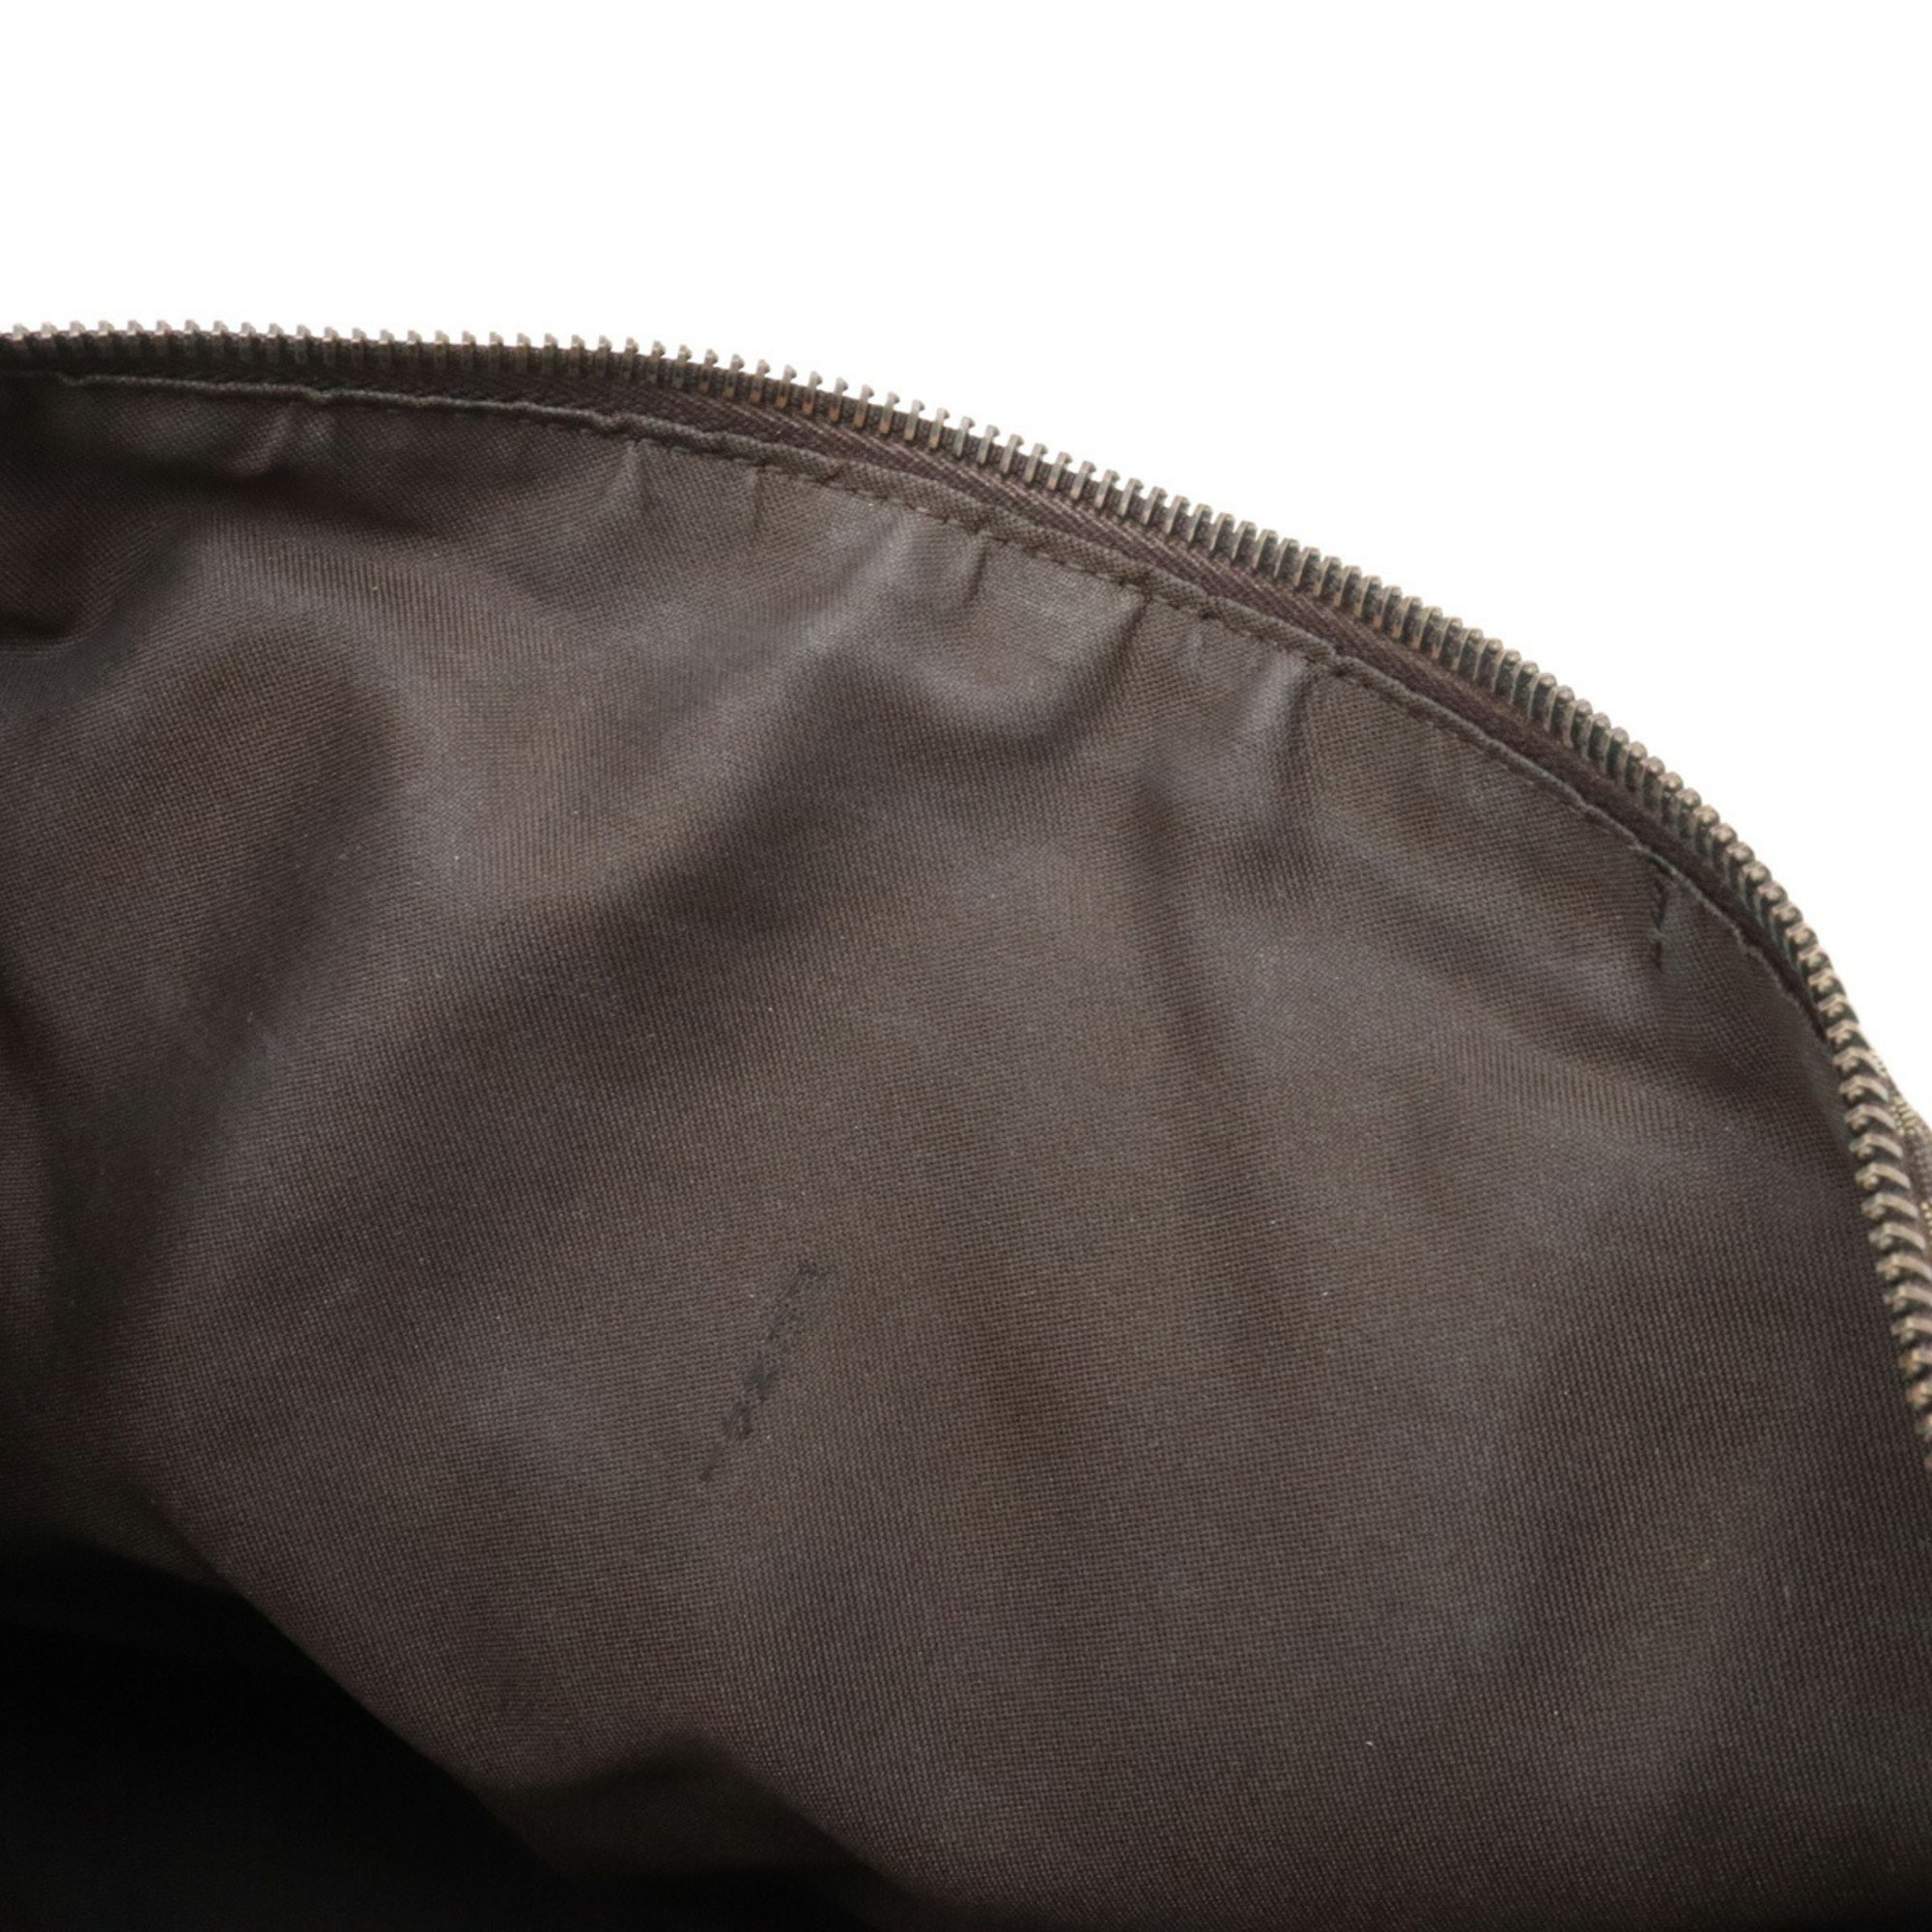 FENDI Zucchino Zucca pattern tote bag handbag canvas leather dark brown beige 8BH134